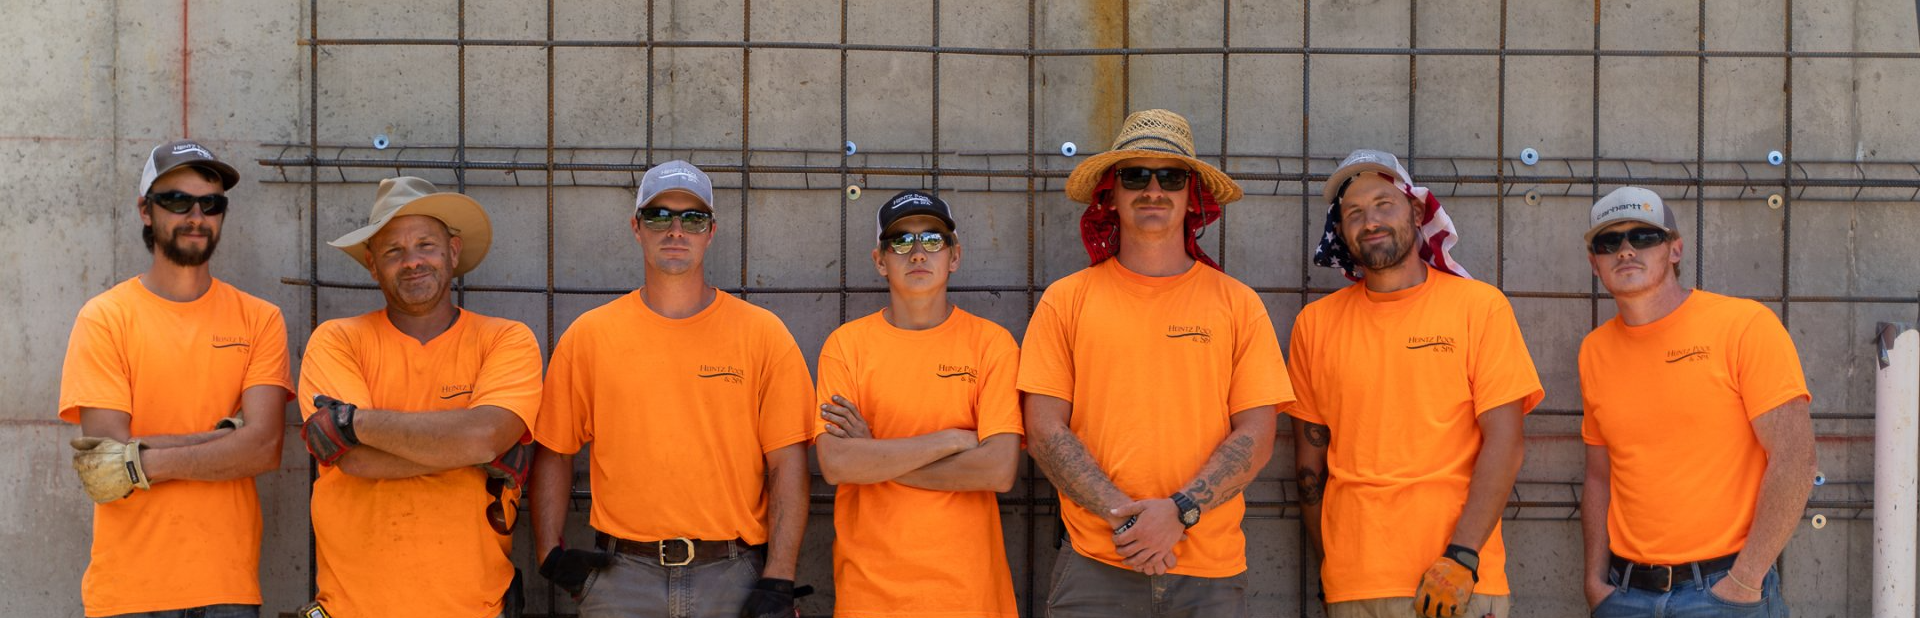 Seven members of Heintz Pool & Spa team wearing their orange uniform standing side by side